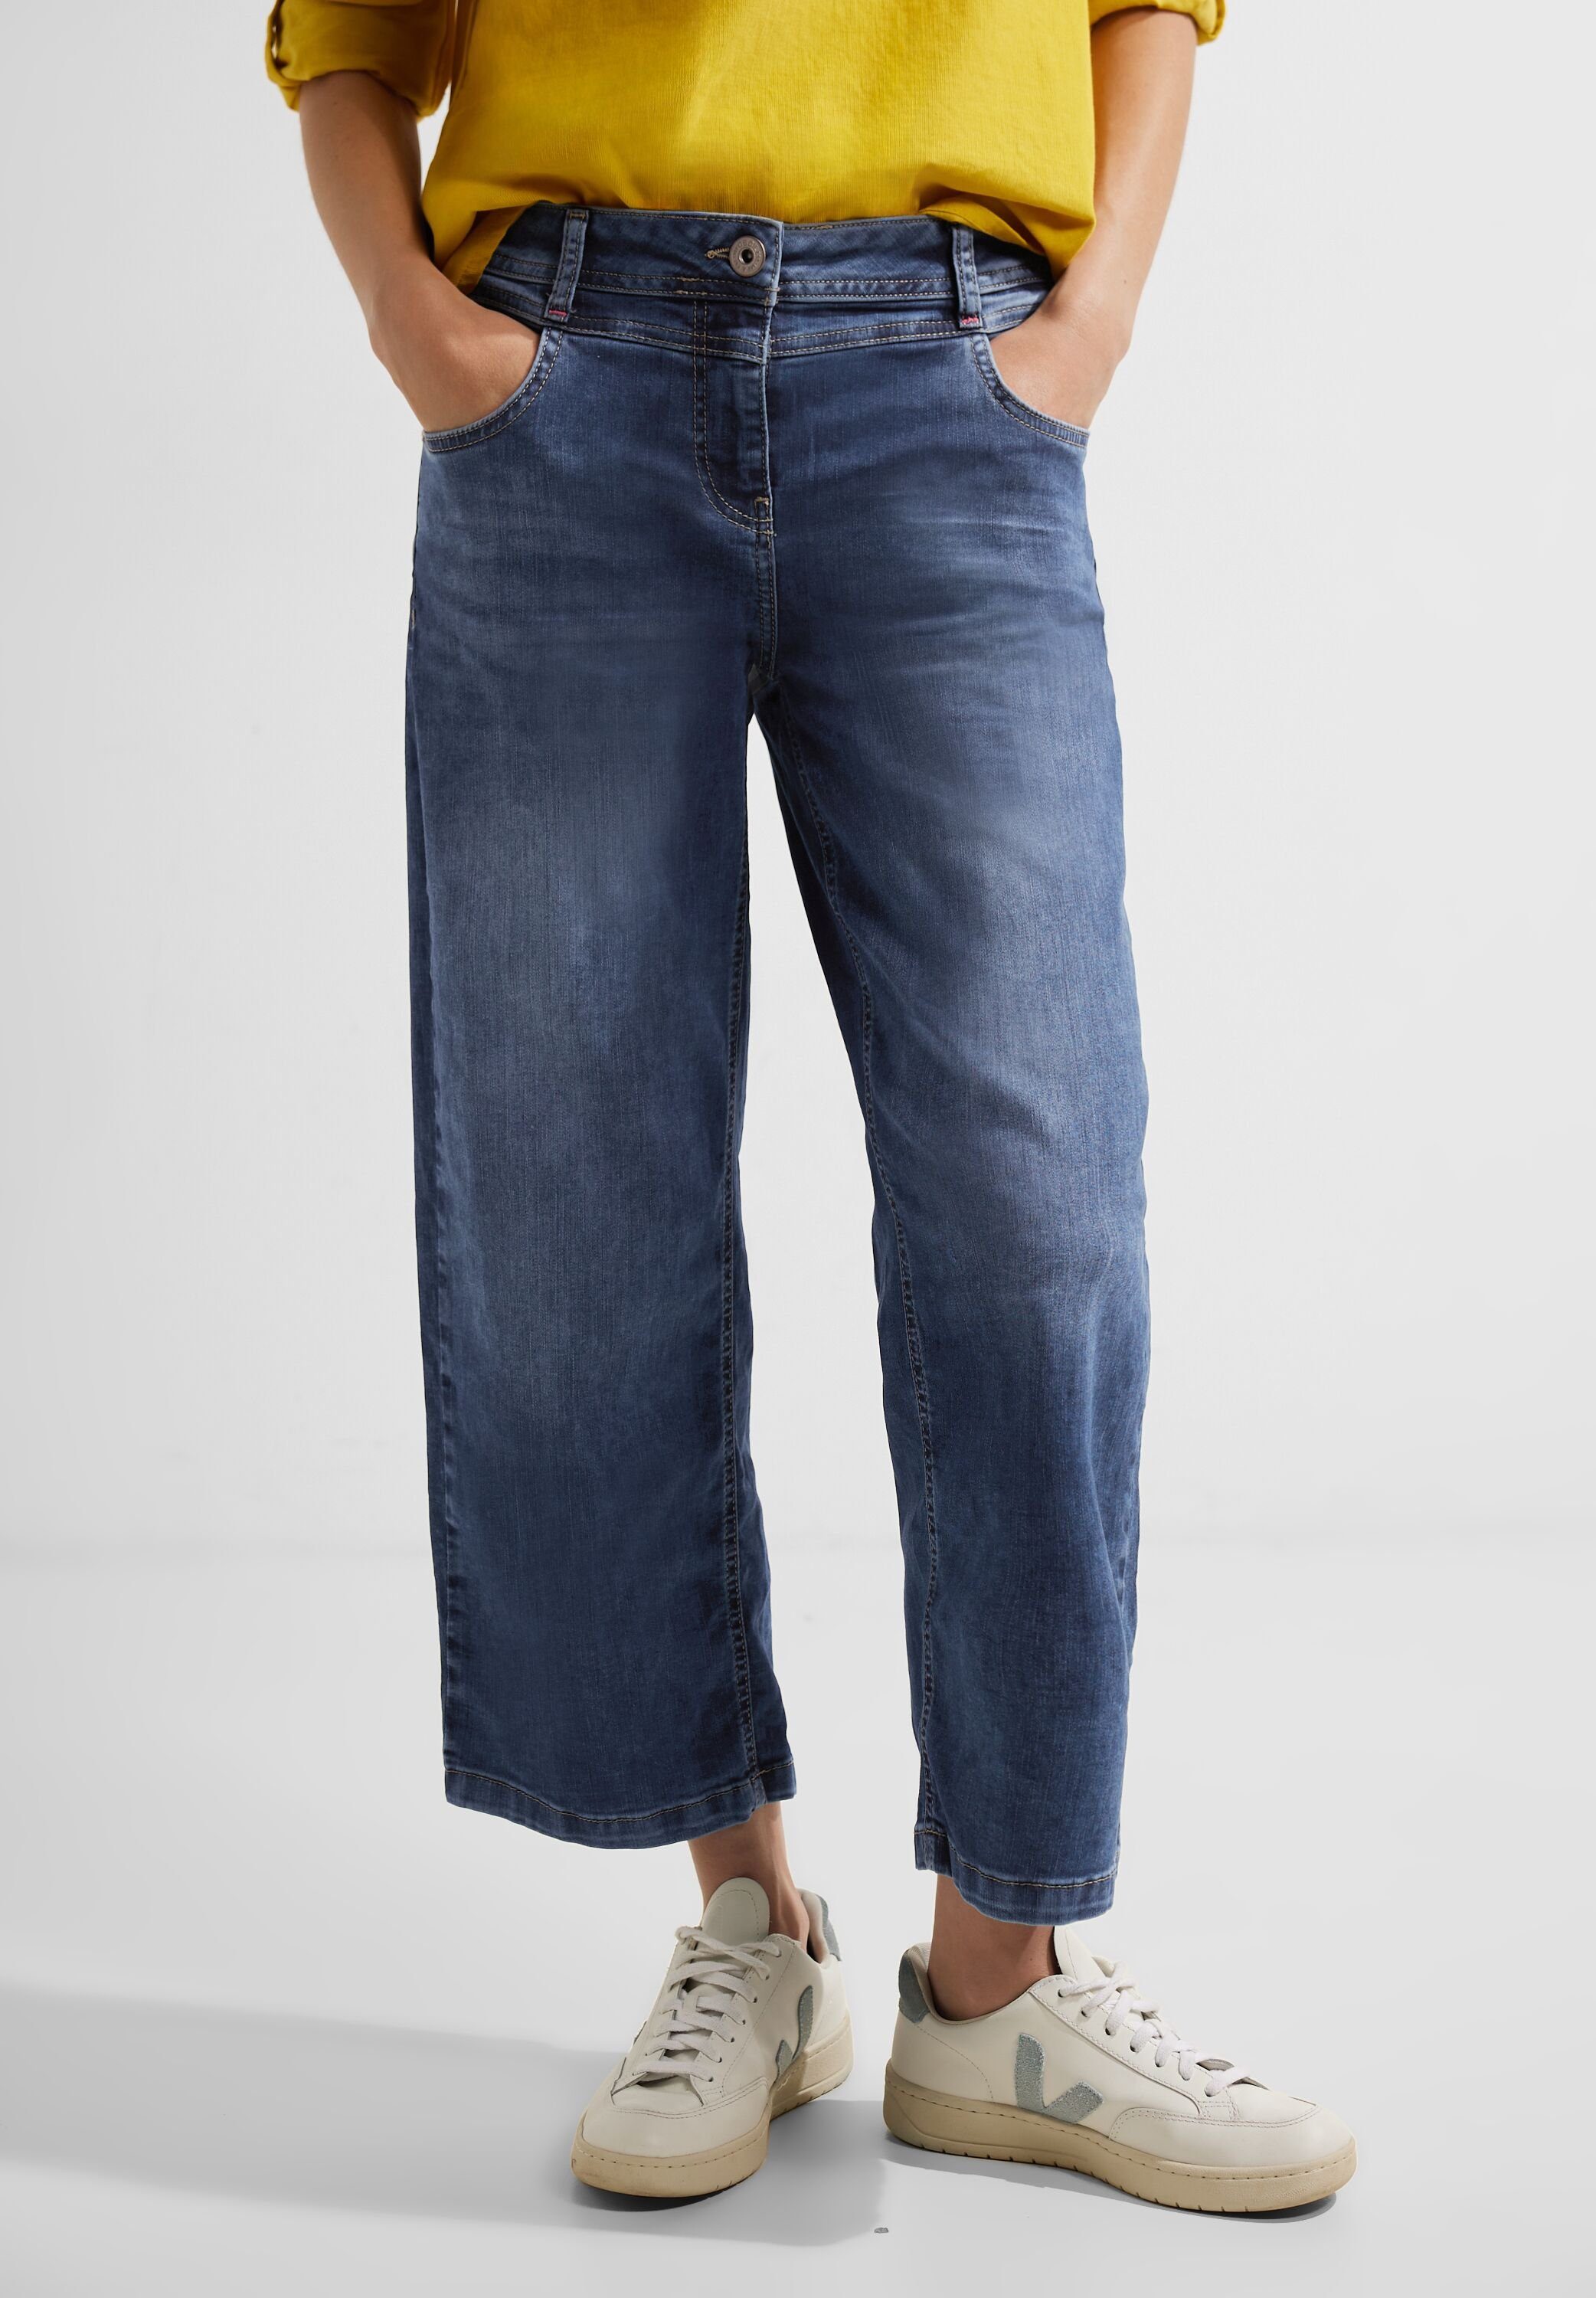 Cecil Loose-fit-Jeans mit Waschung, Maße bei Größe 26/26 ca.:  Innenbeinlänge 66 cm, Fussweite 24 cm